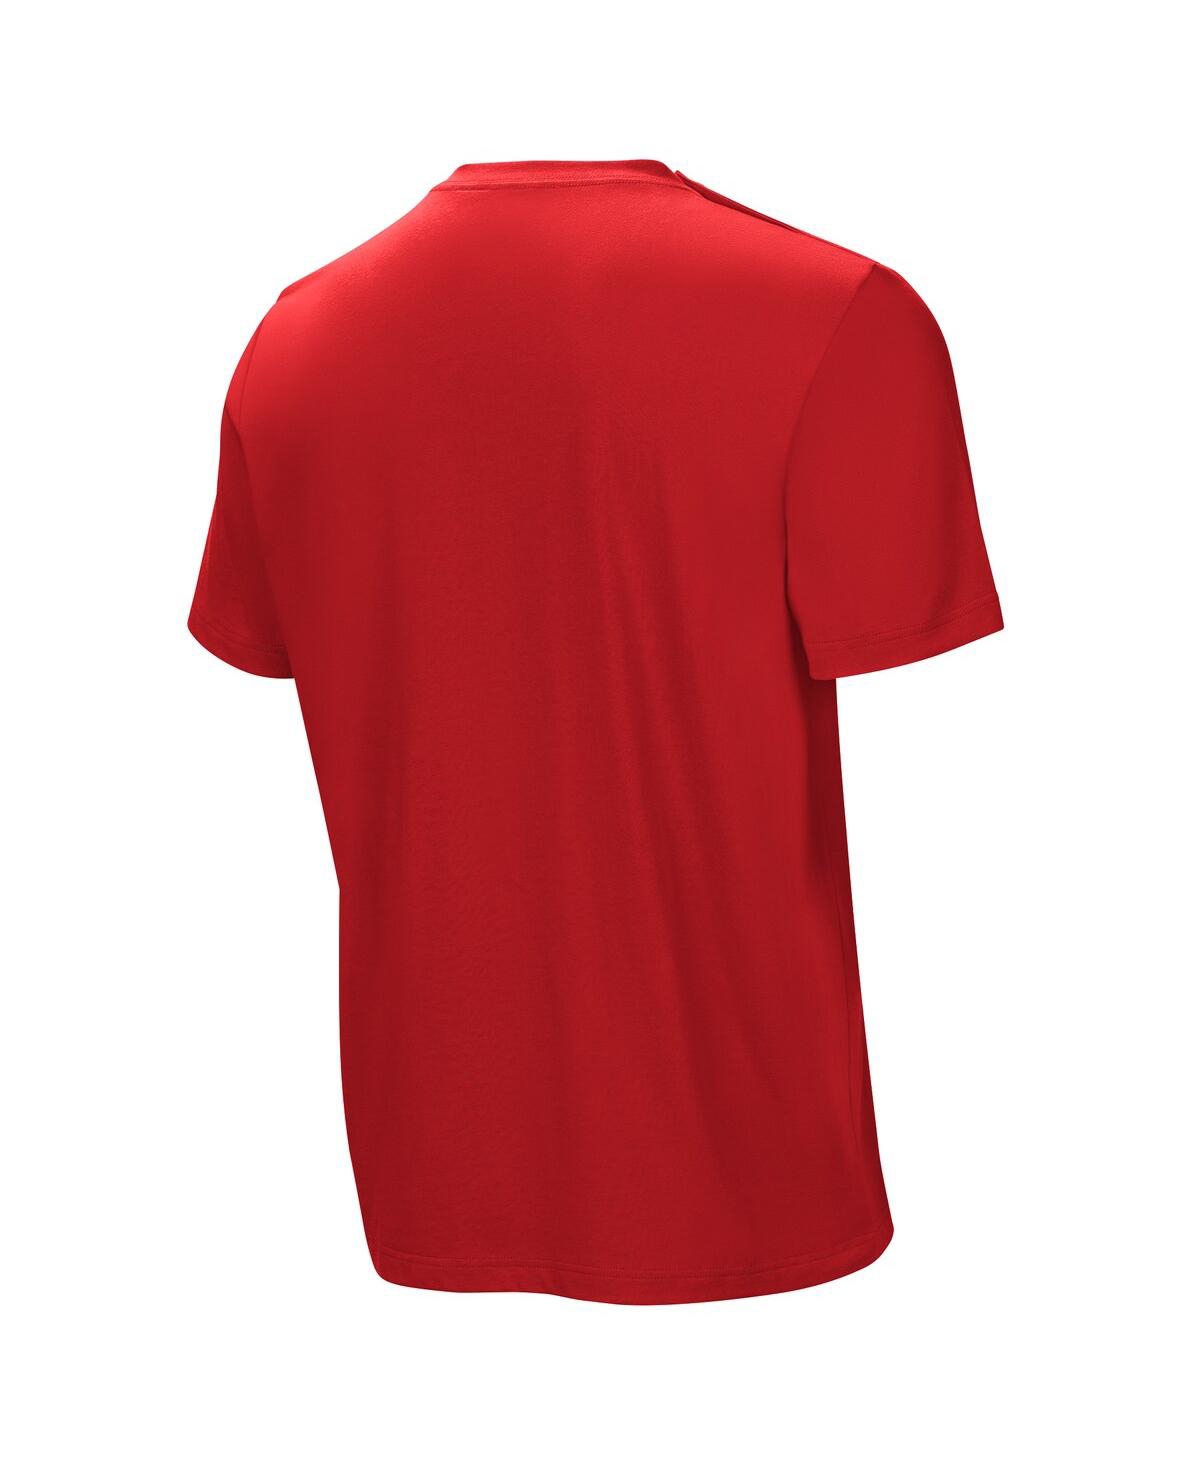 Shop Nfl Properties Men's Red Kansas City Chiefs Home Team Adaptive T-shirt